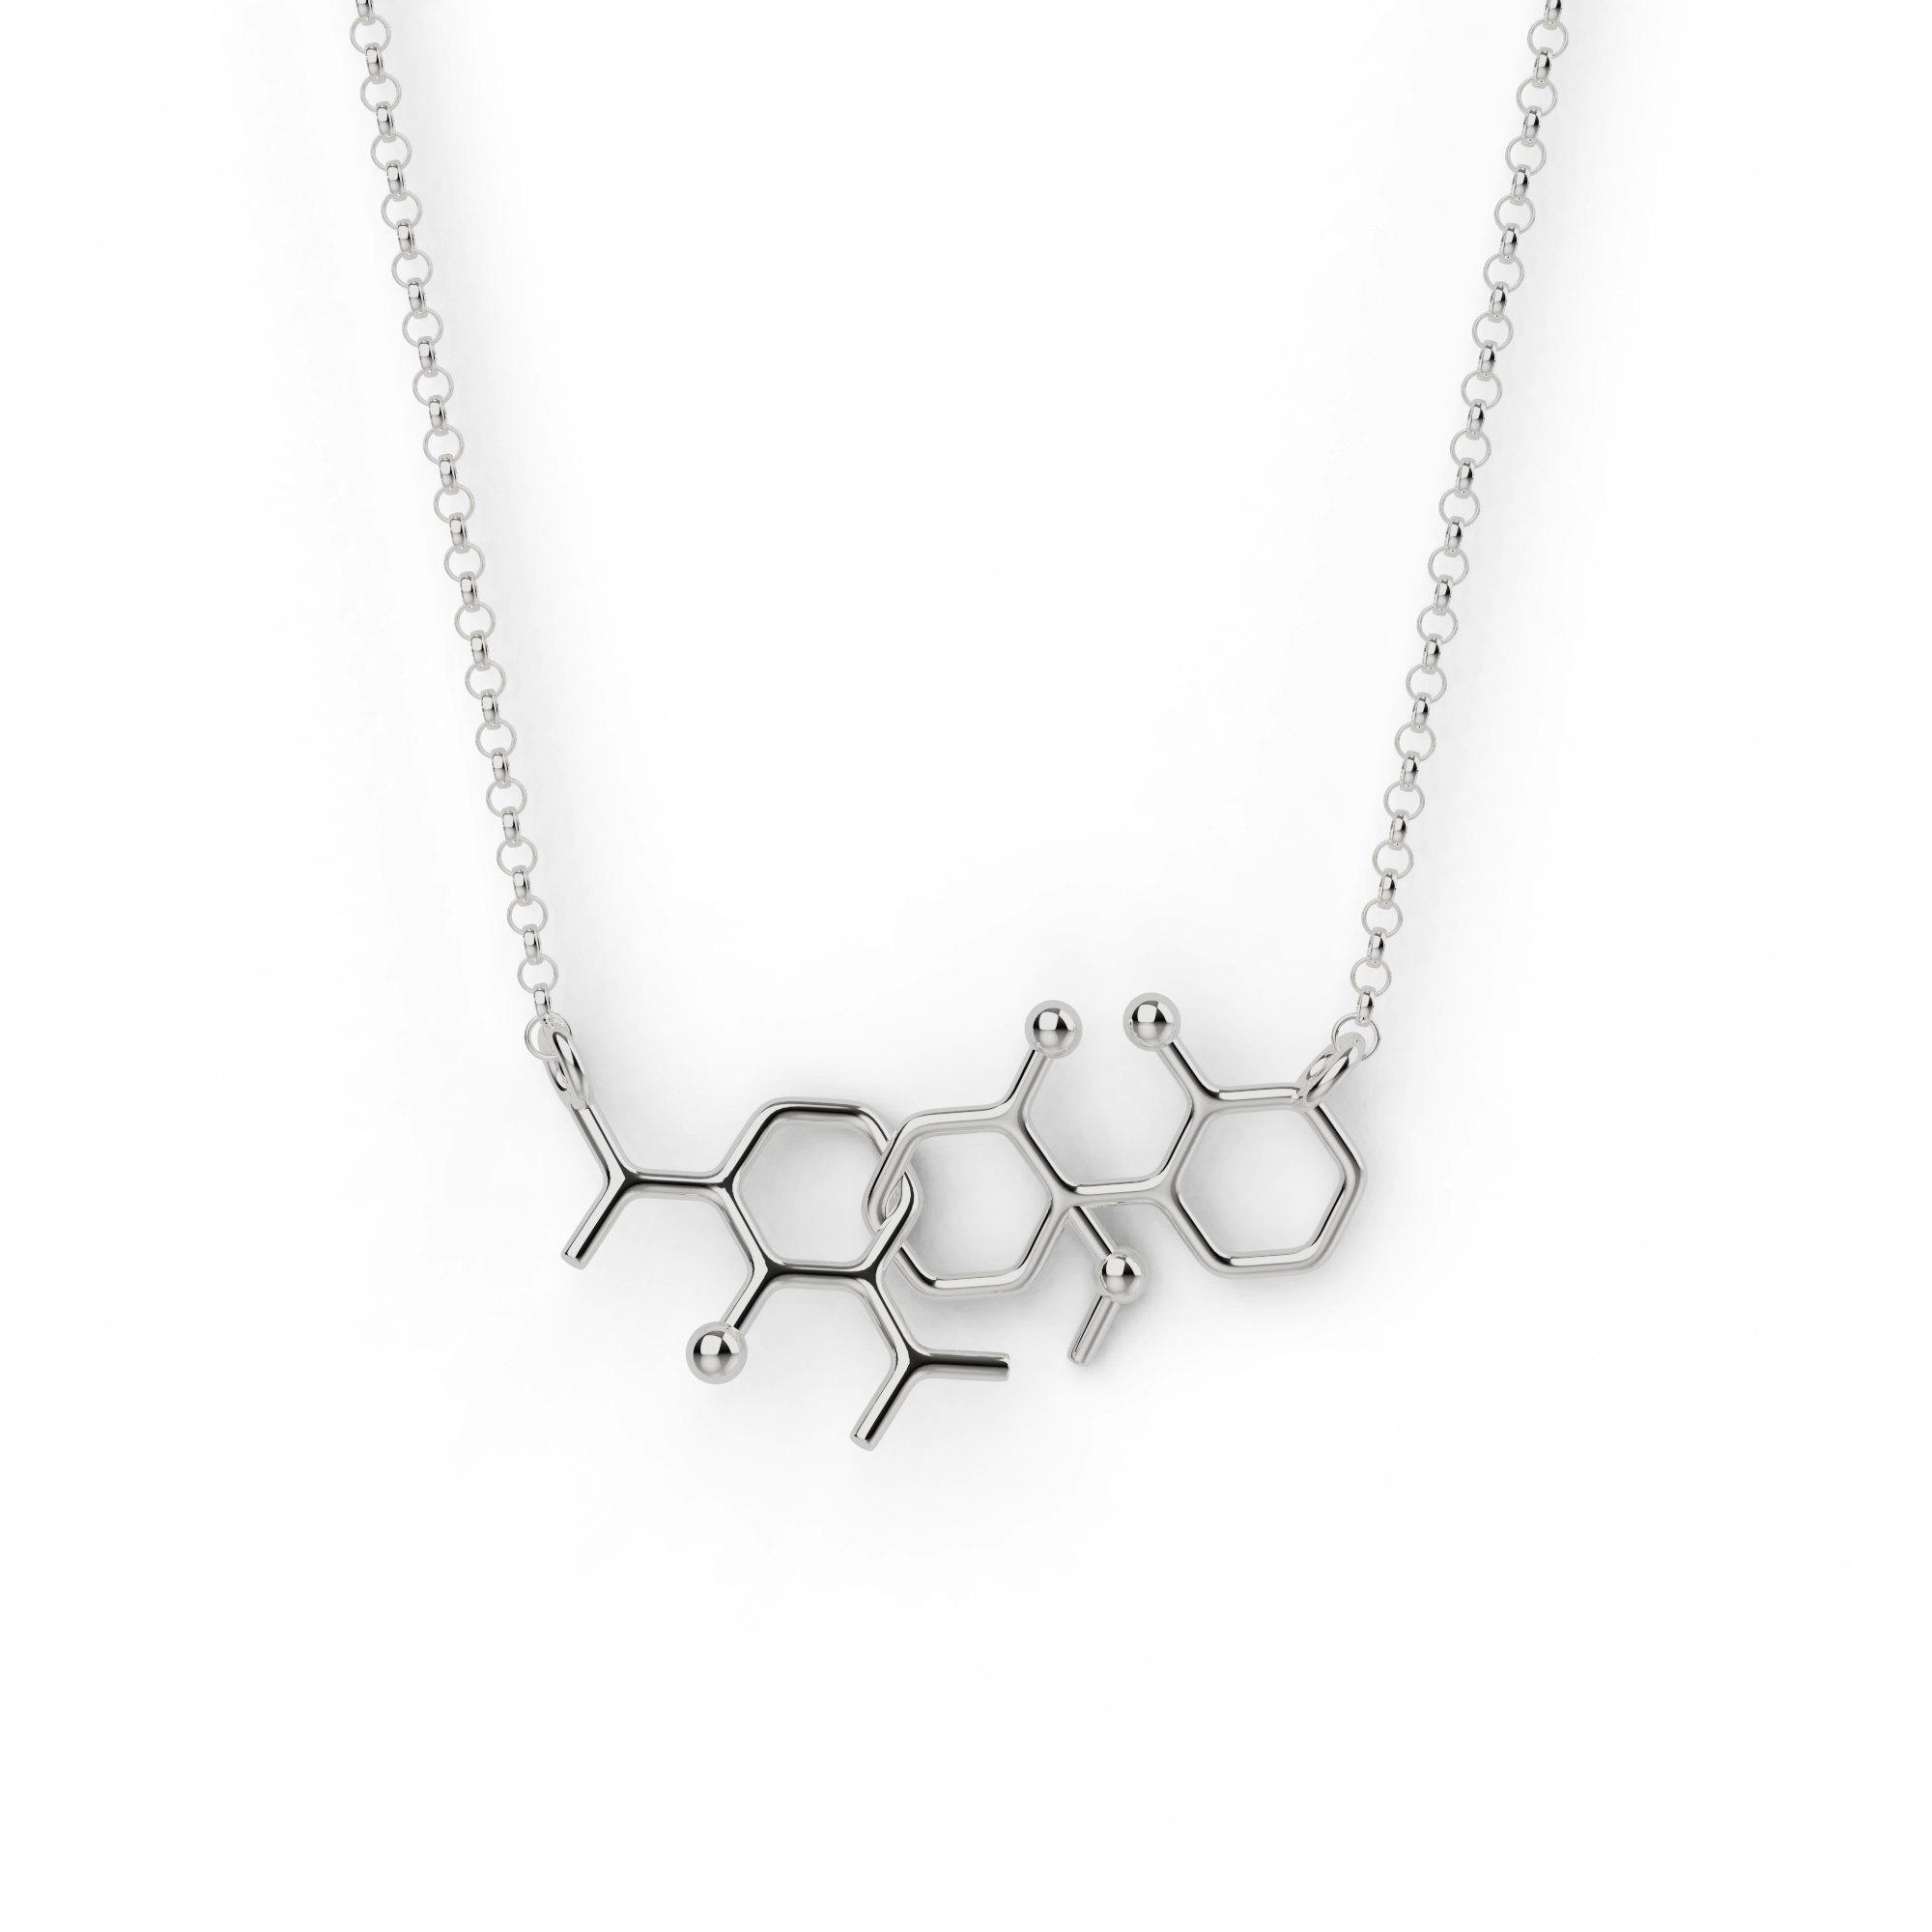 ketamine propofol necklace H | silver